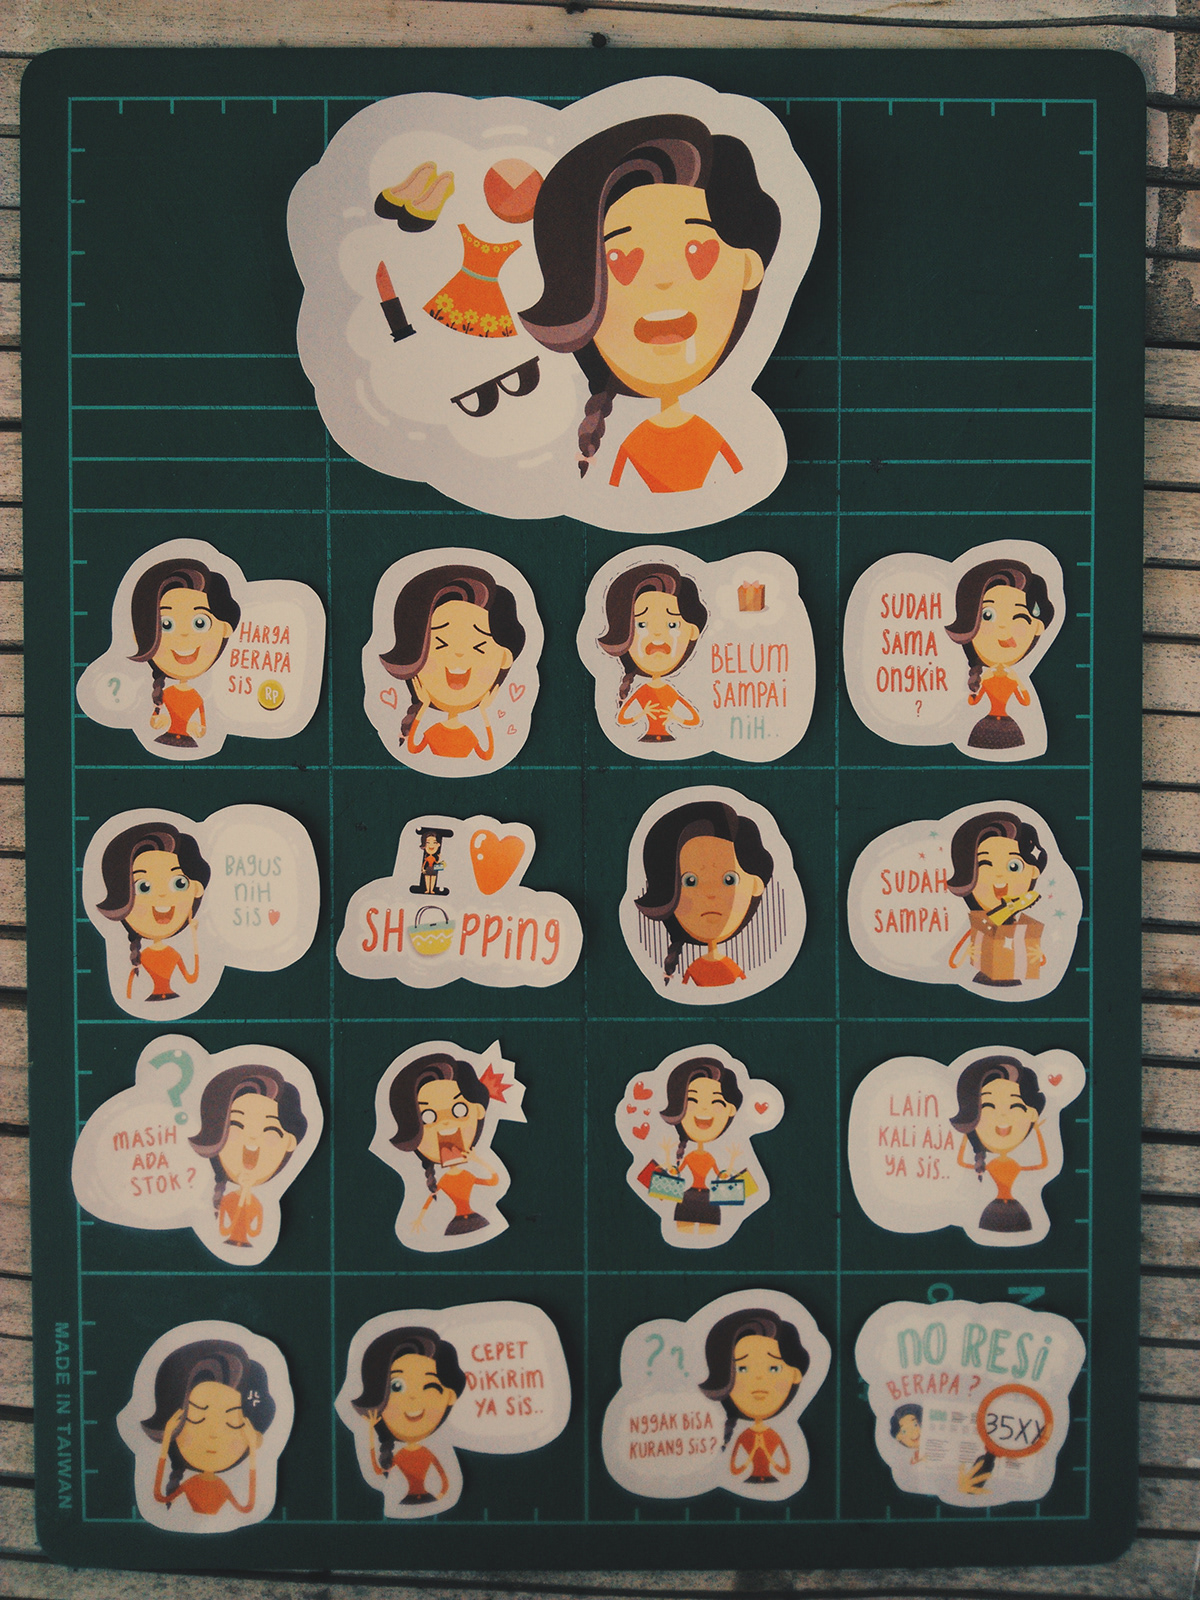 kleo klara Shopping sticker indonesia cute vector bahasa online Belanja cartoon Emoticon transuction buyer seller